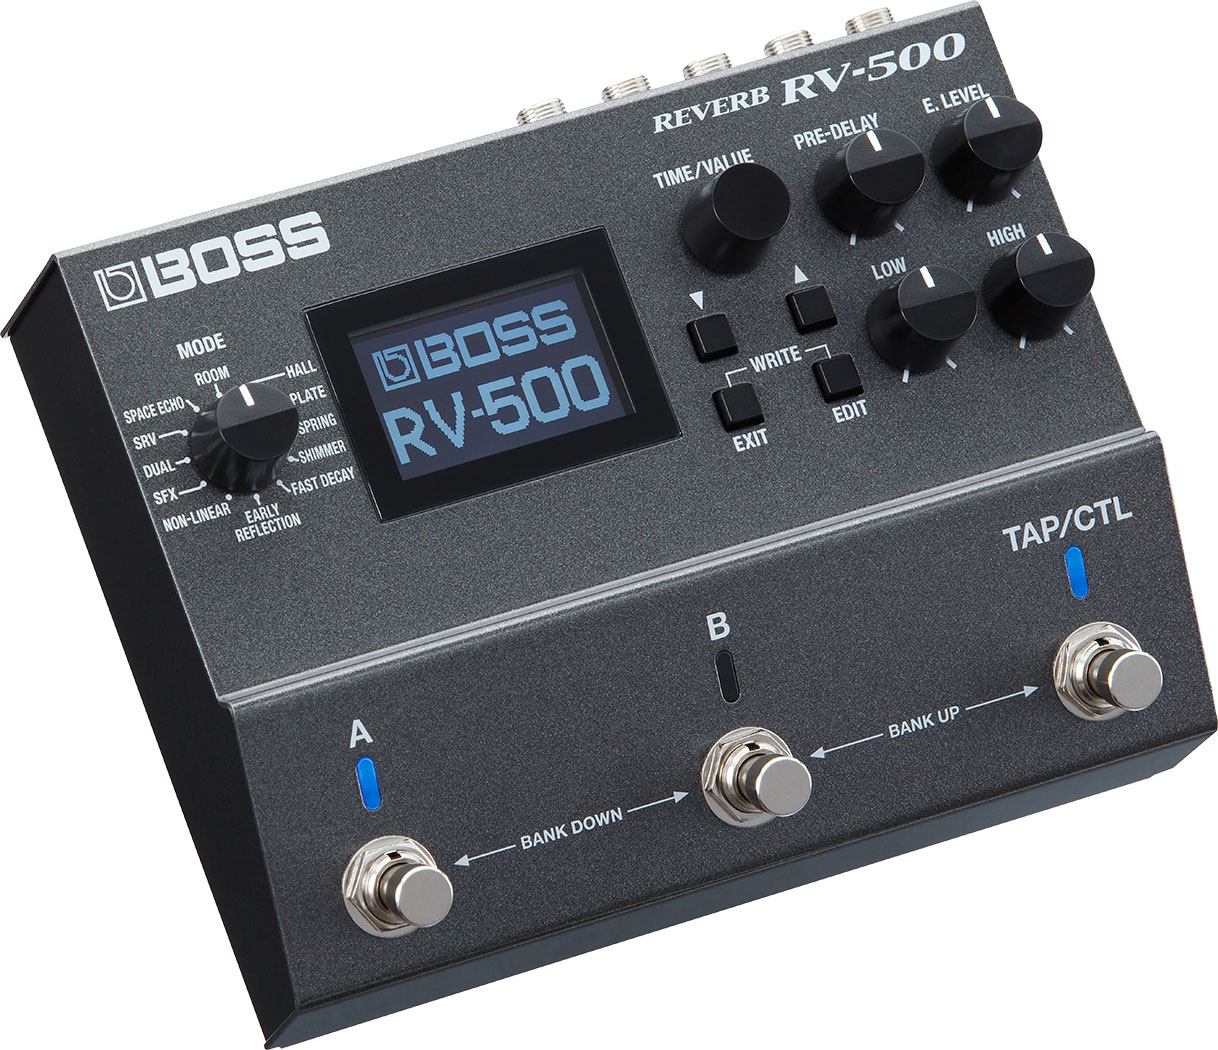 BOSS - RV-500 | Reverb